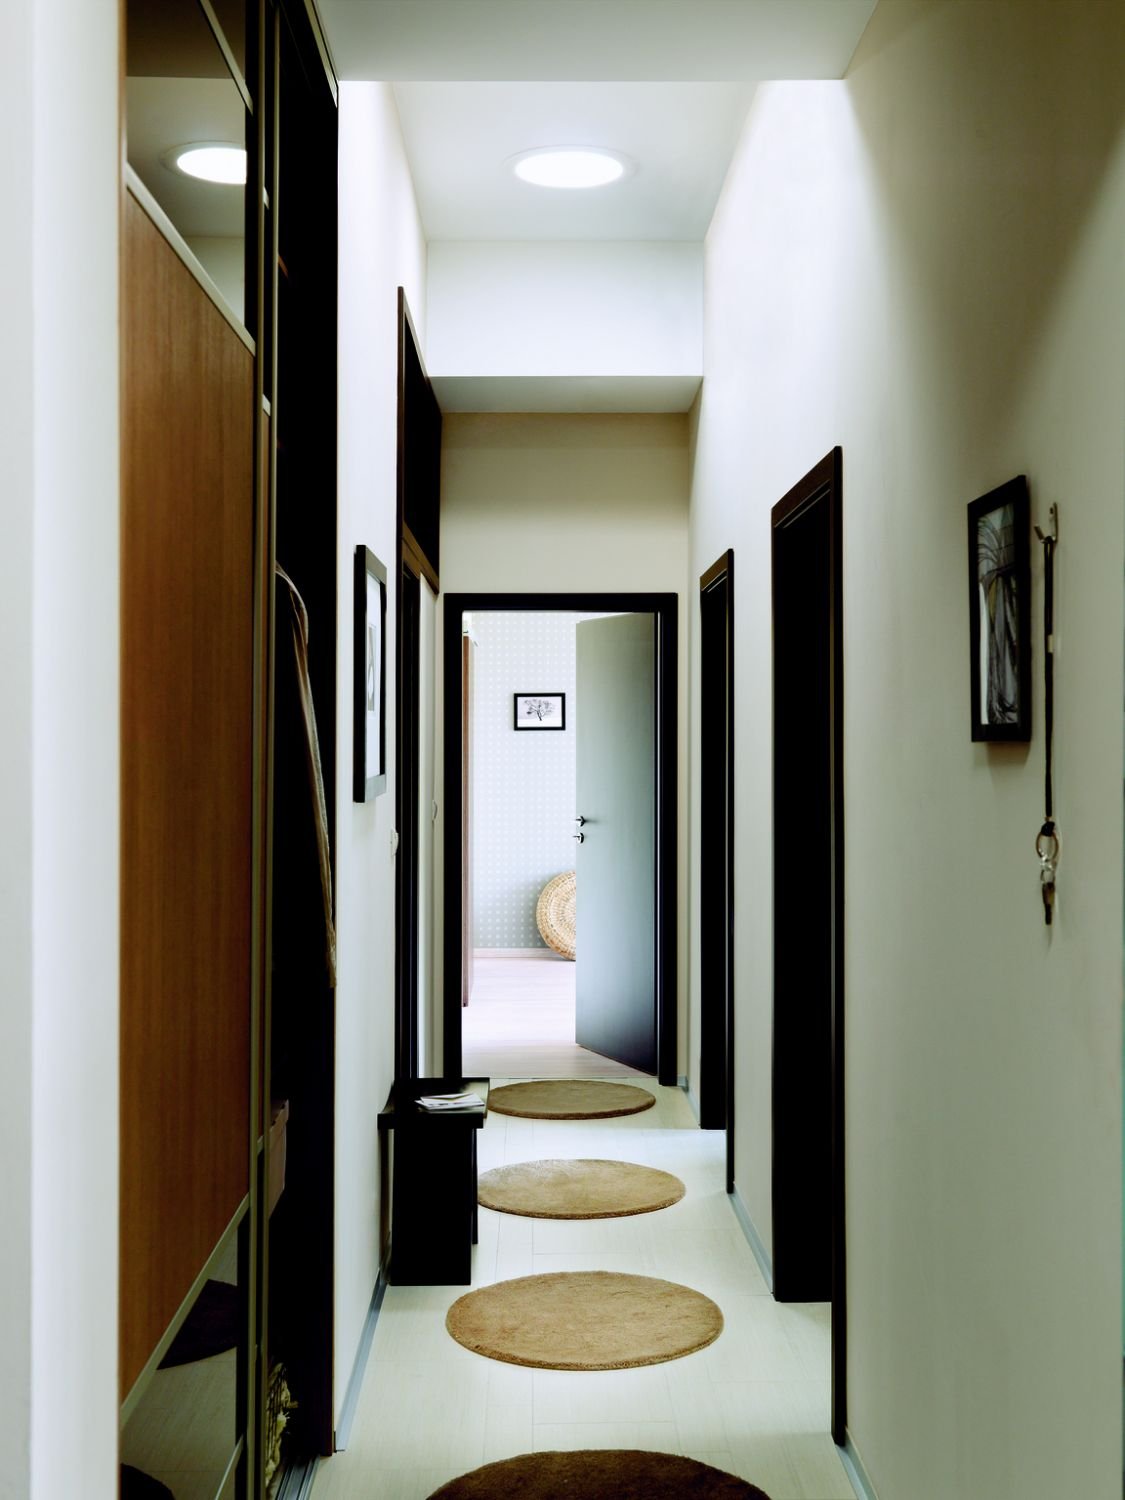 Дизайн коридора в квартире фото реальные в панельном доме фото